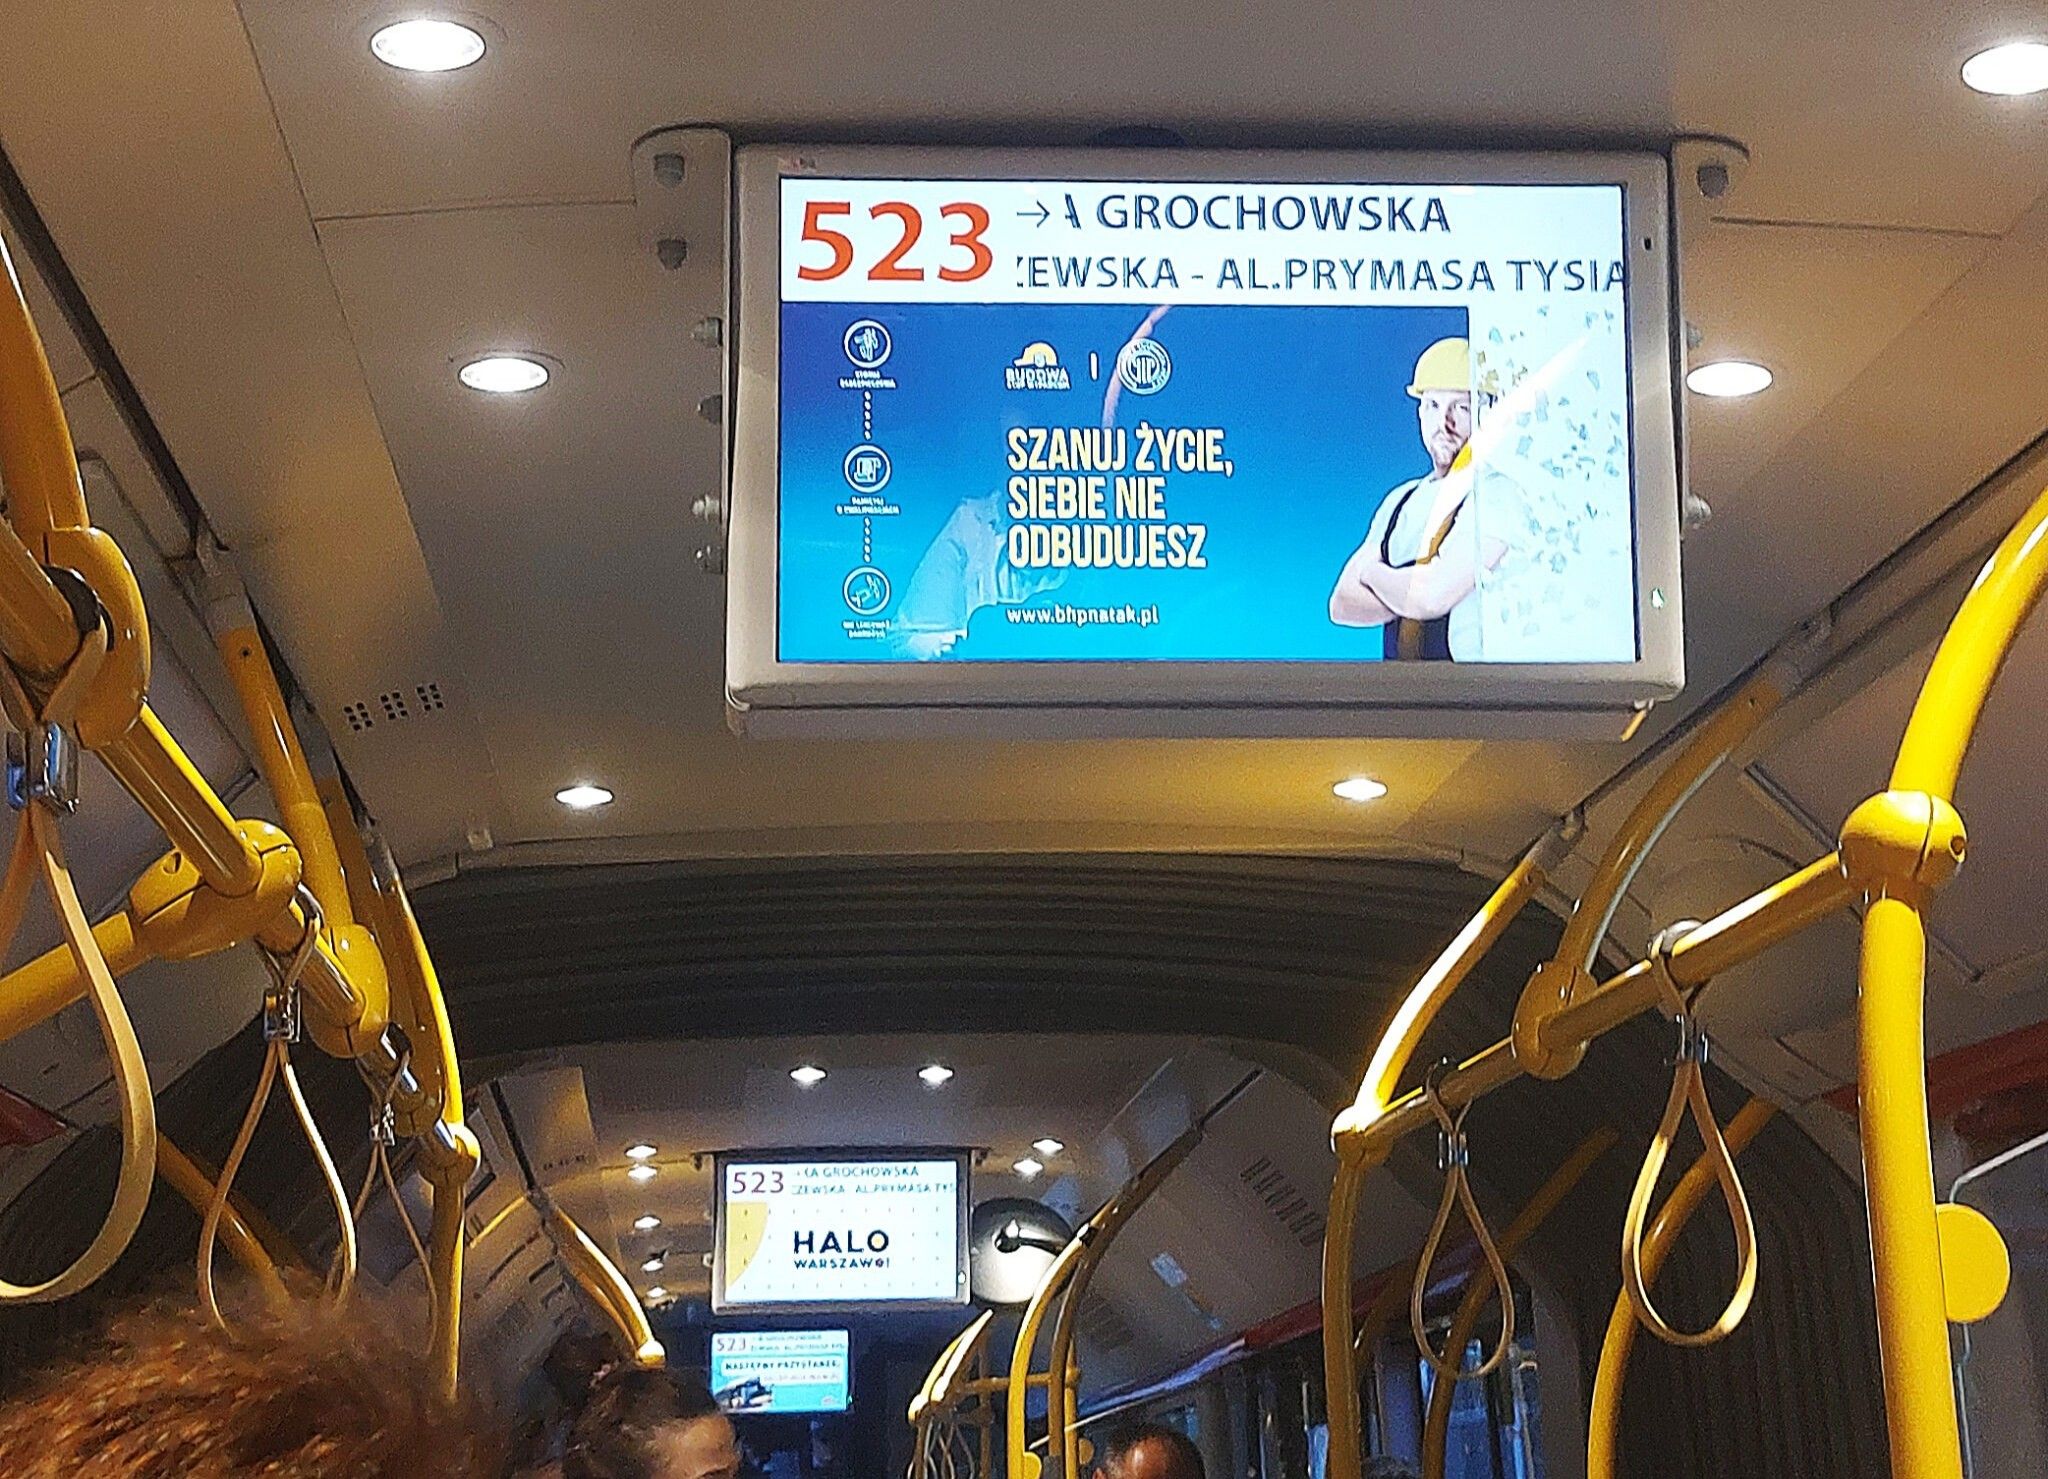 zdjęcie wnętrza tramwaju z ekranem, na którym wyśiwetla się reklama kampanii